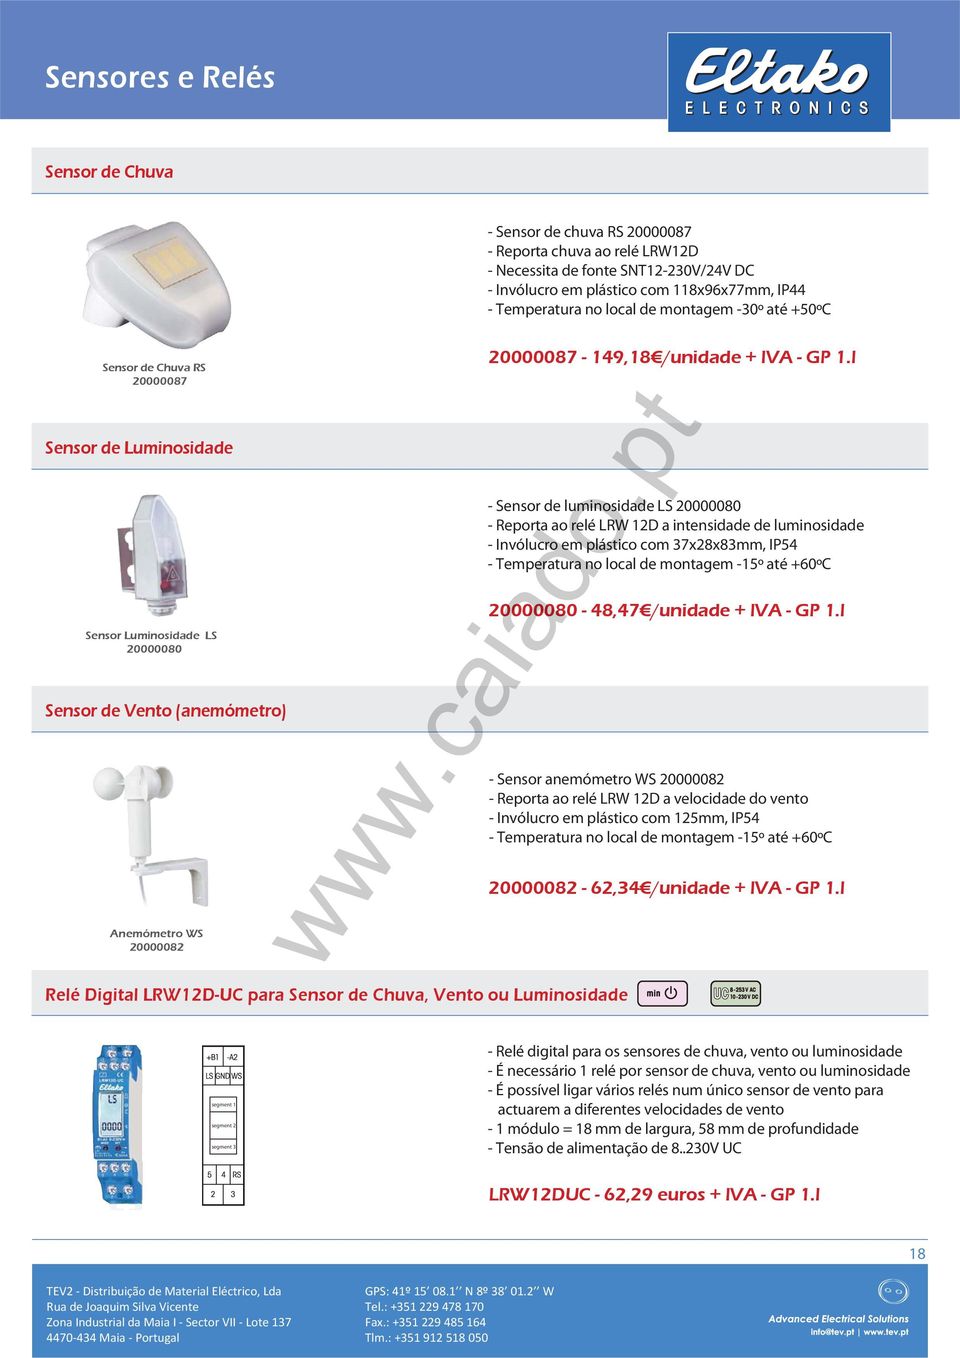 Sensor de Chuva, Vento ou Luminosidade 20000087-149,18 /unidade + IVA - GP 1.